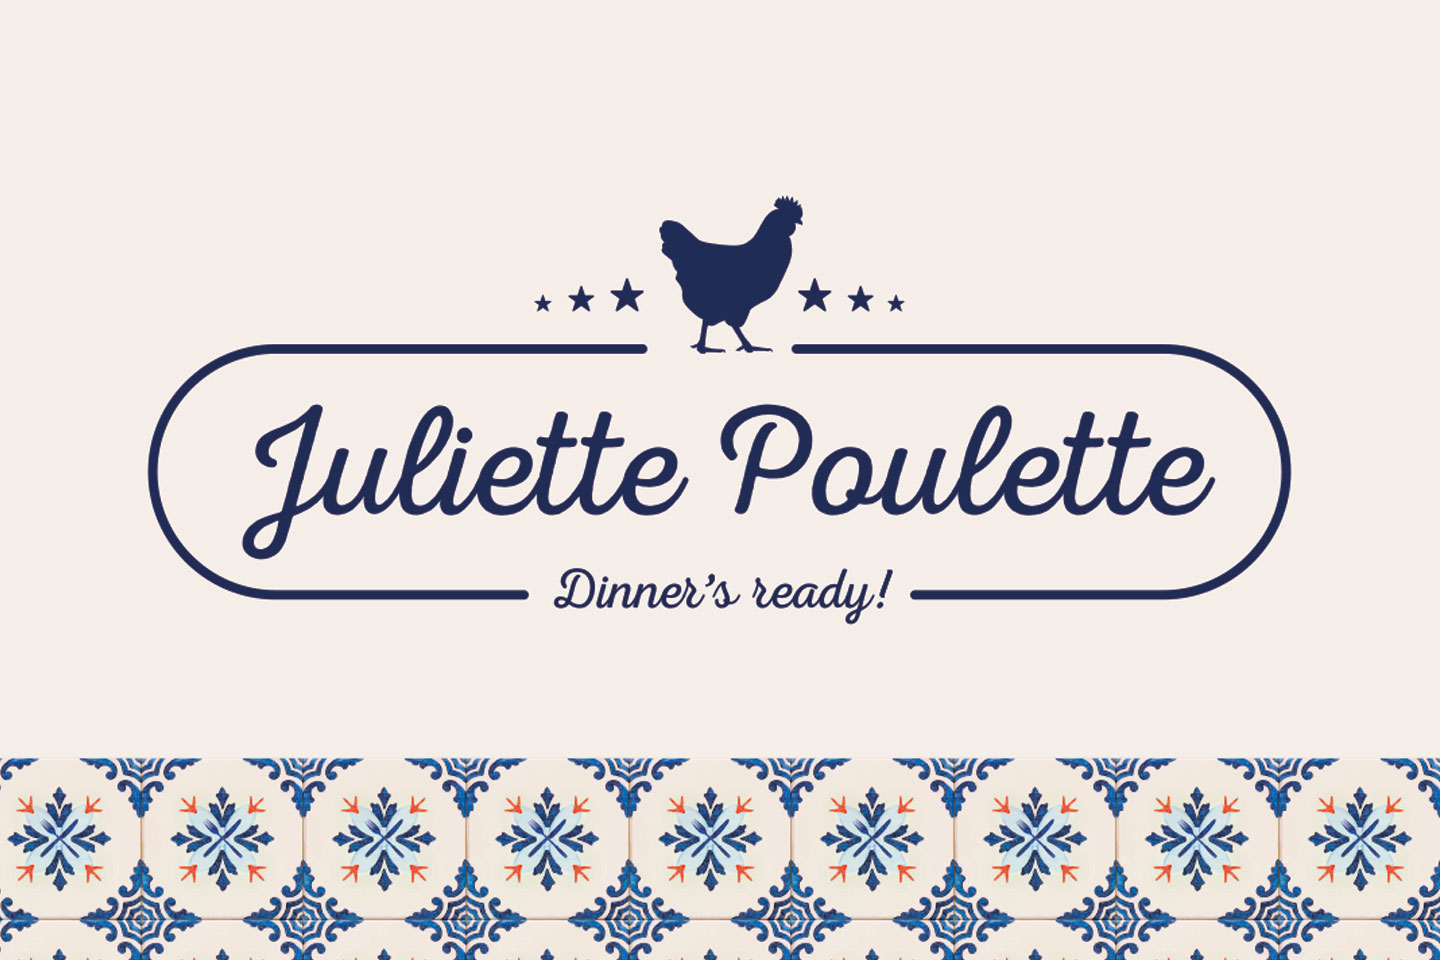 Juliette Poulette 4